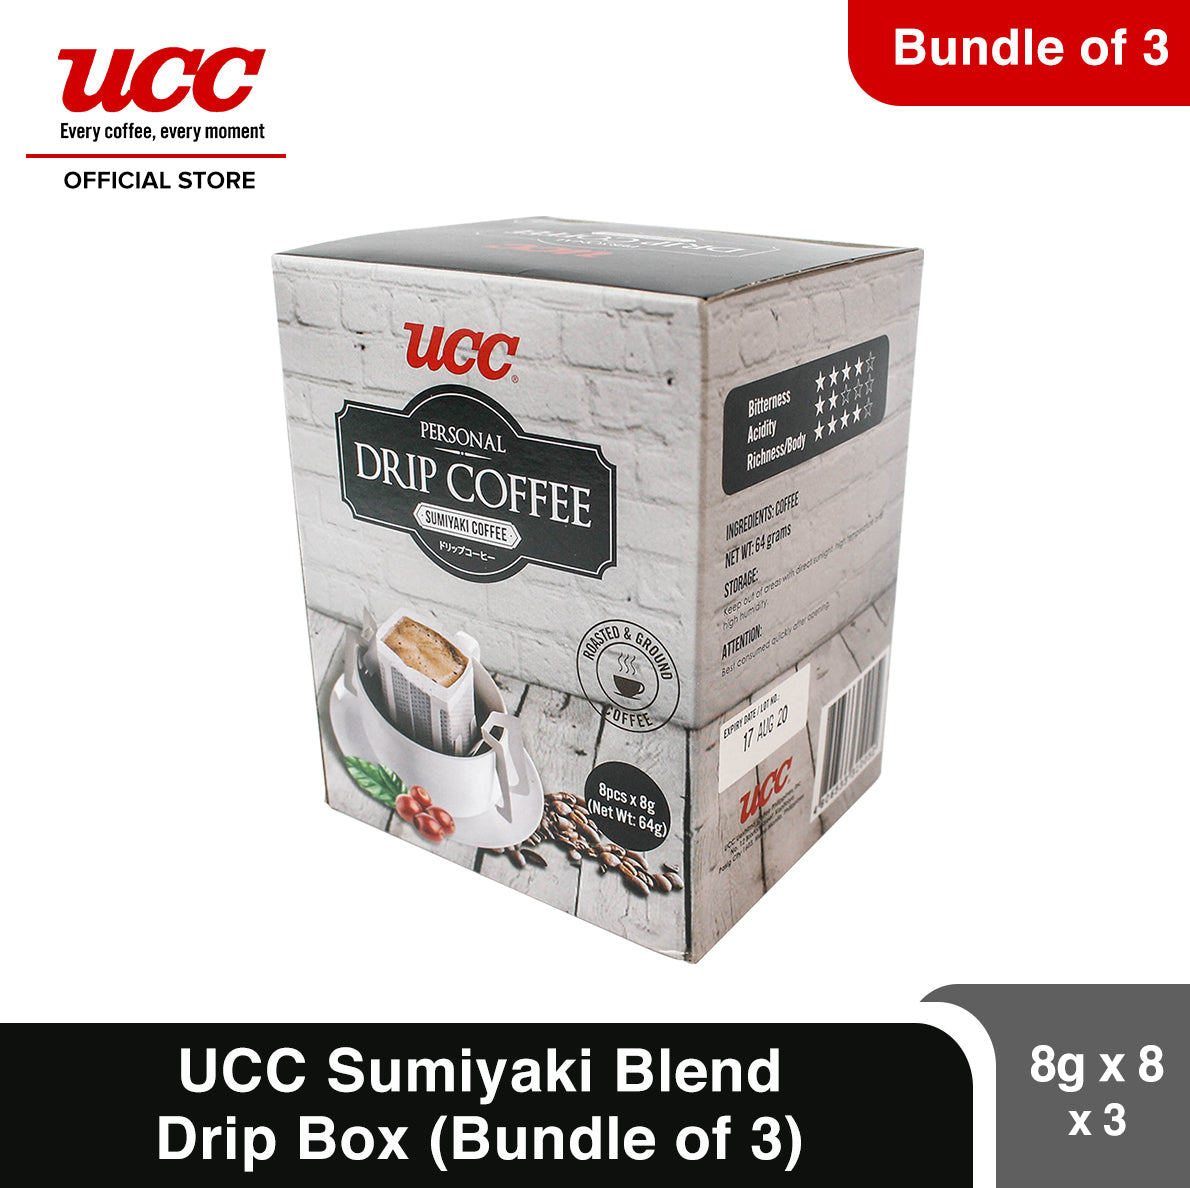 UCC Drip Coffee Sumiyaki Blend Box (Bundle of 3) (8g x 8 x 3)